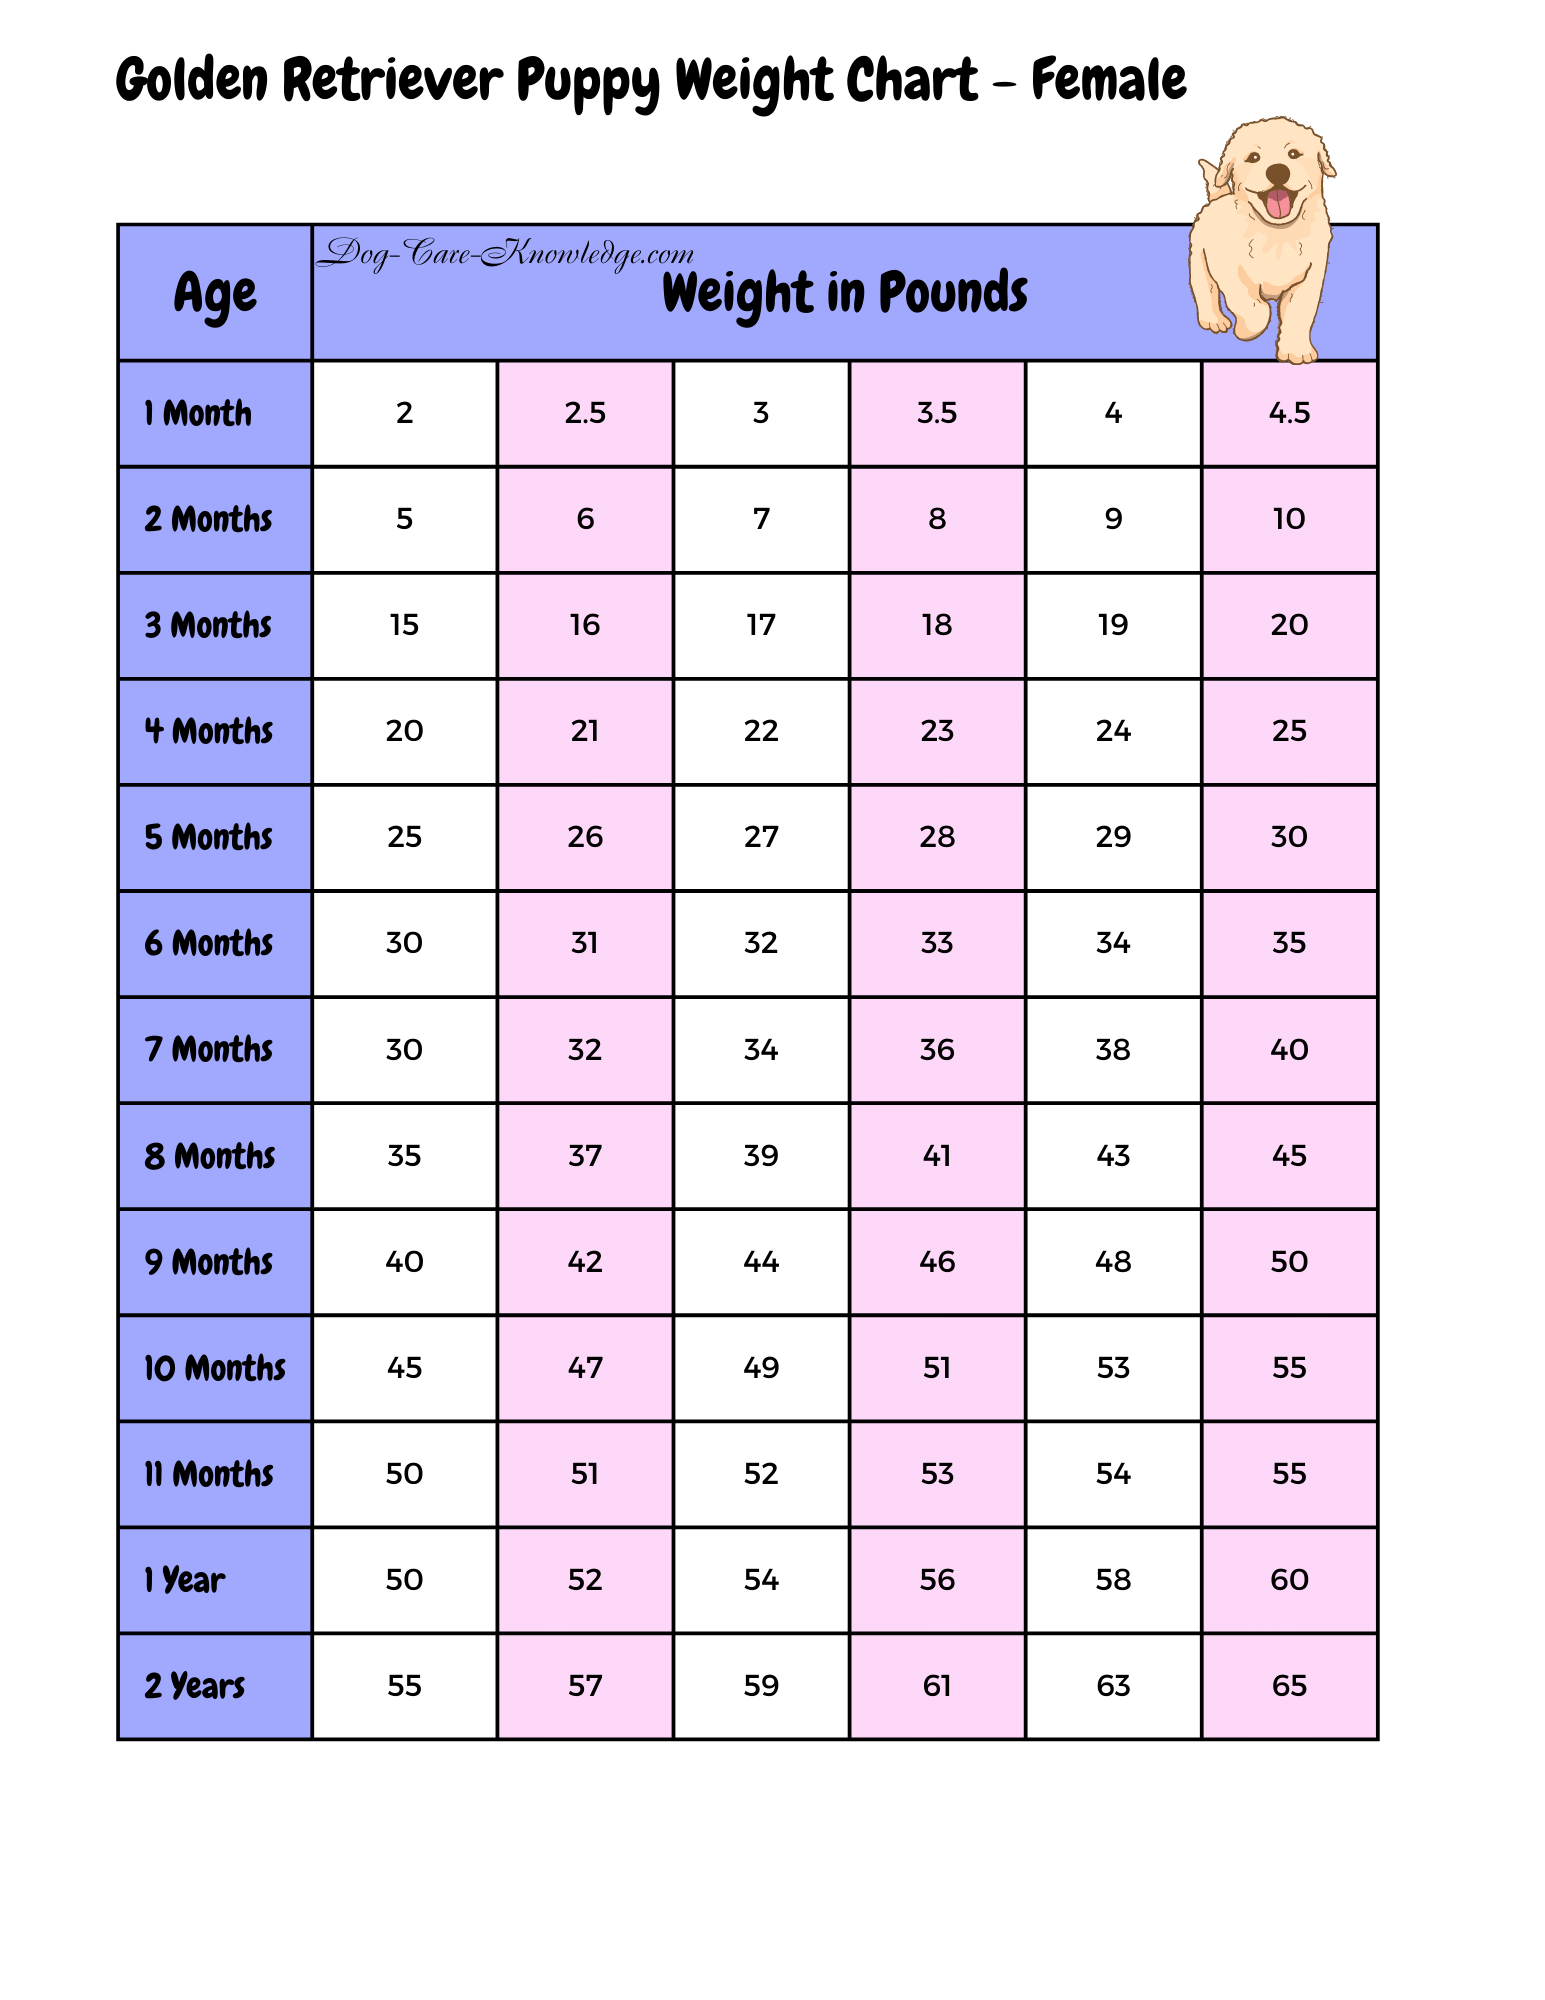 Female golden retriever weight chart